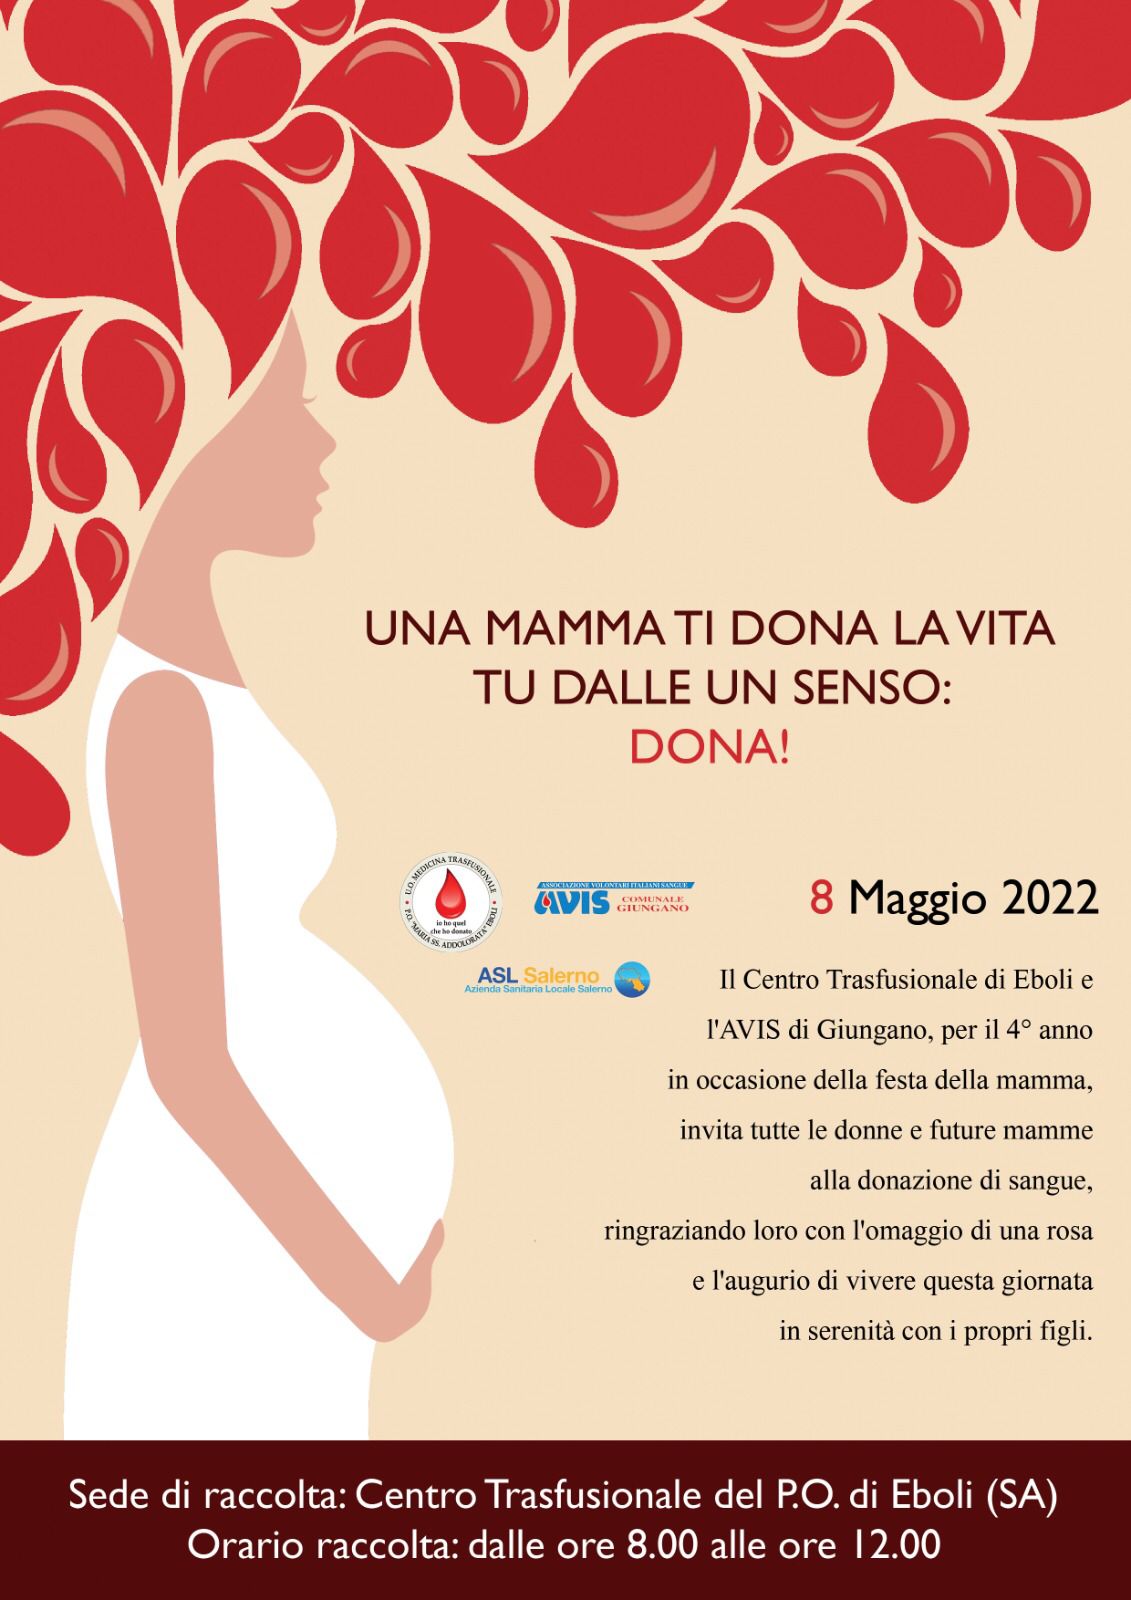 EBOLI. “FESTA DELLA MAMMA” 2022: DONAZIONE DI SANGUE IN ONORE DELLA DONATRICE DI VITA AL P.O. CITTADINO